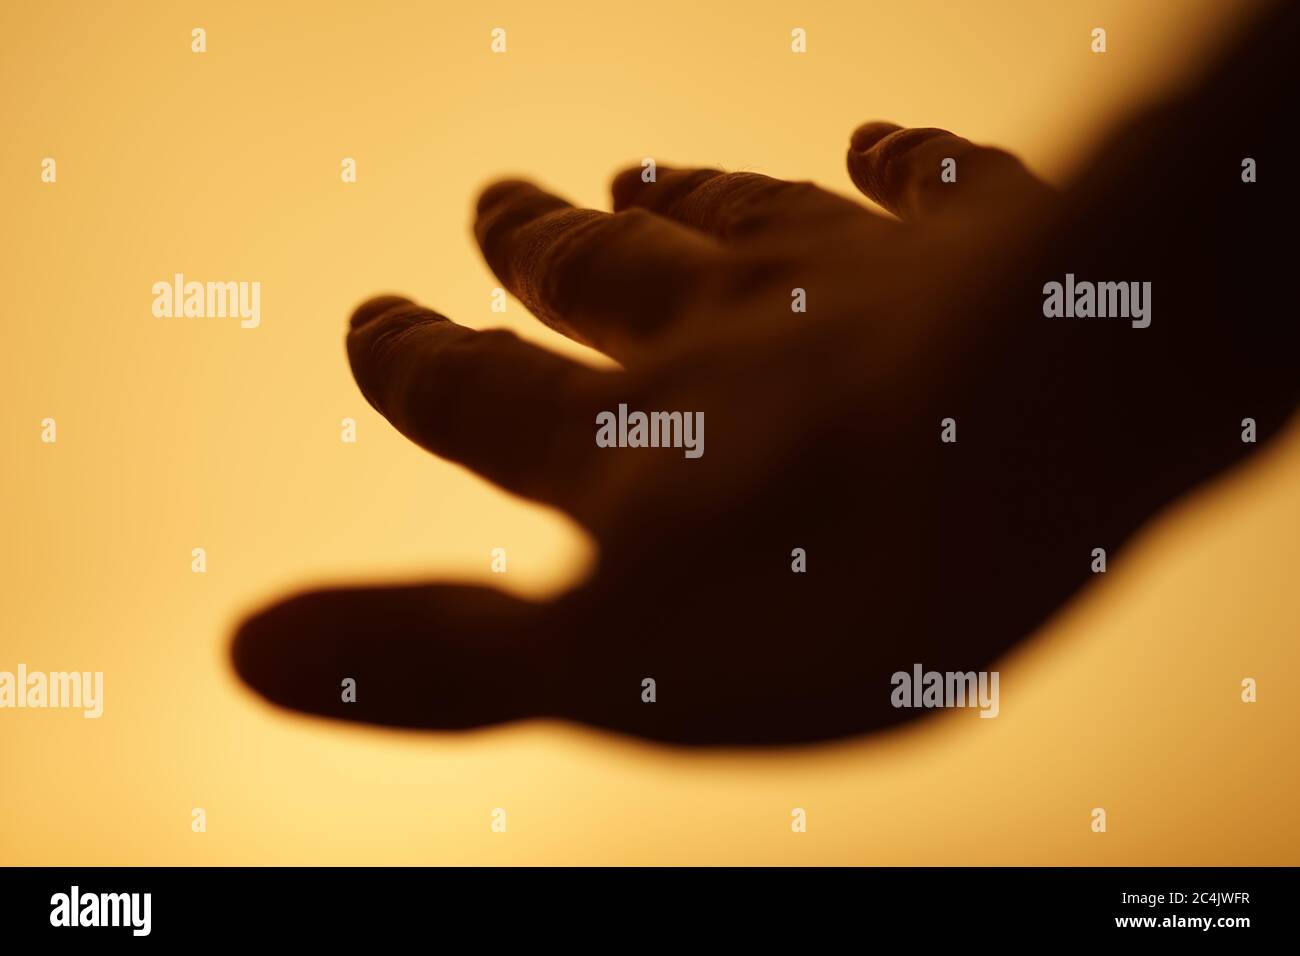 la mano humana oscura está volando en un espacio amarillo cálido Foto de stock